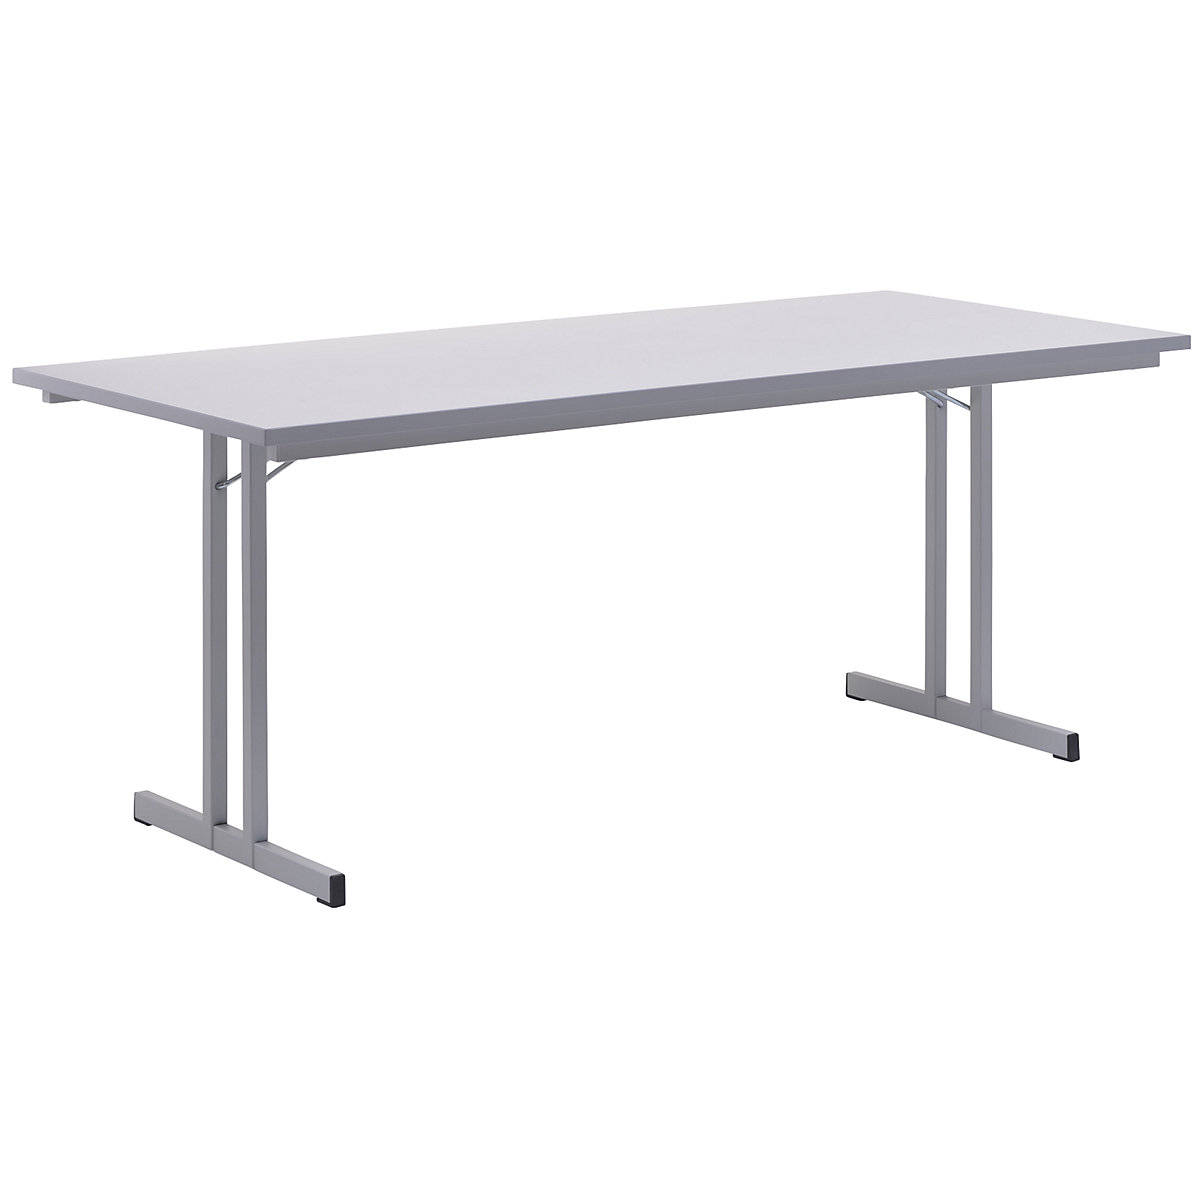 Sklápací stôl, s extra hrubou doskou, výška 720 mm, 1800 x 800 mm, podstavec svetlošedá, doska svetlošedá